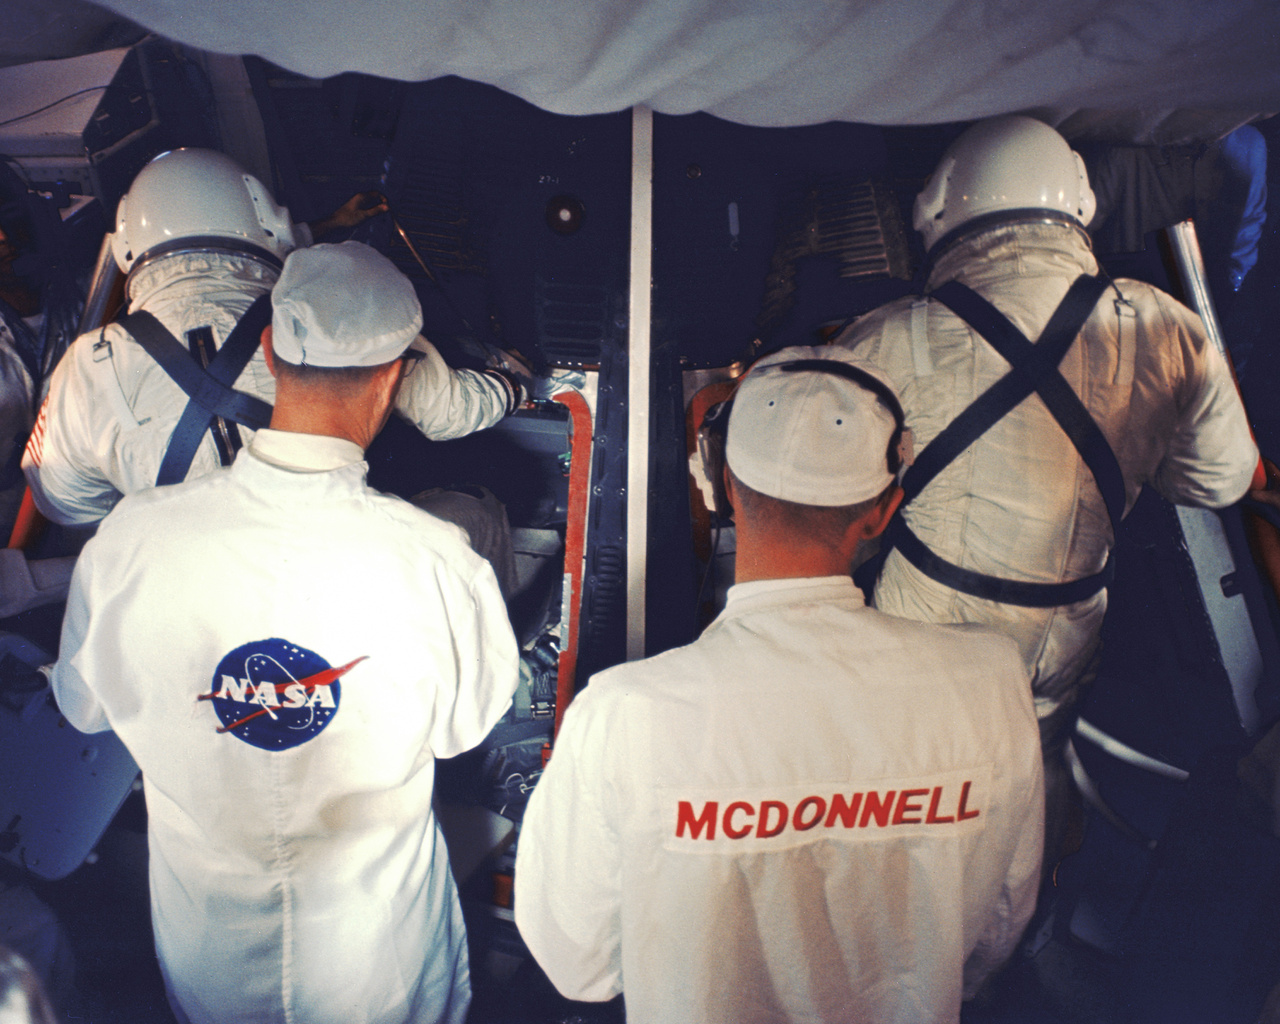 A NASA és a McDonnell technikusai segítenek a két űrhajósnak beszállni a Gemini-8 űrhajóba a start előtt a Kennedy Űrközpont 19-es startállásán. (35 mm-es diafilmkocka, 1966. március 16., NASA-azonosító: 104-KSC-66C-1852)